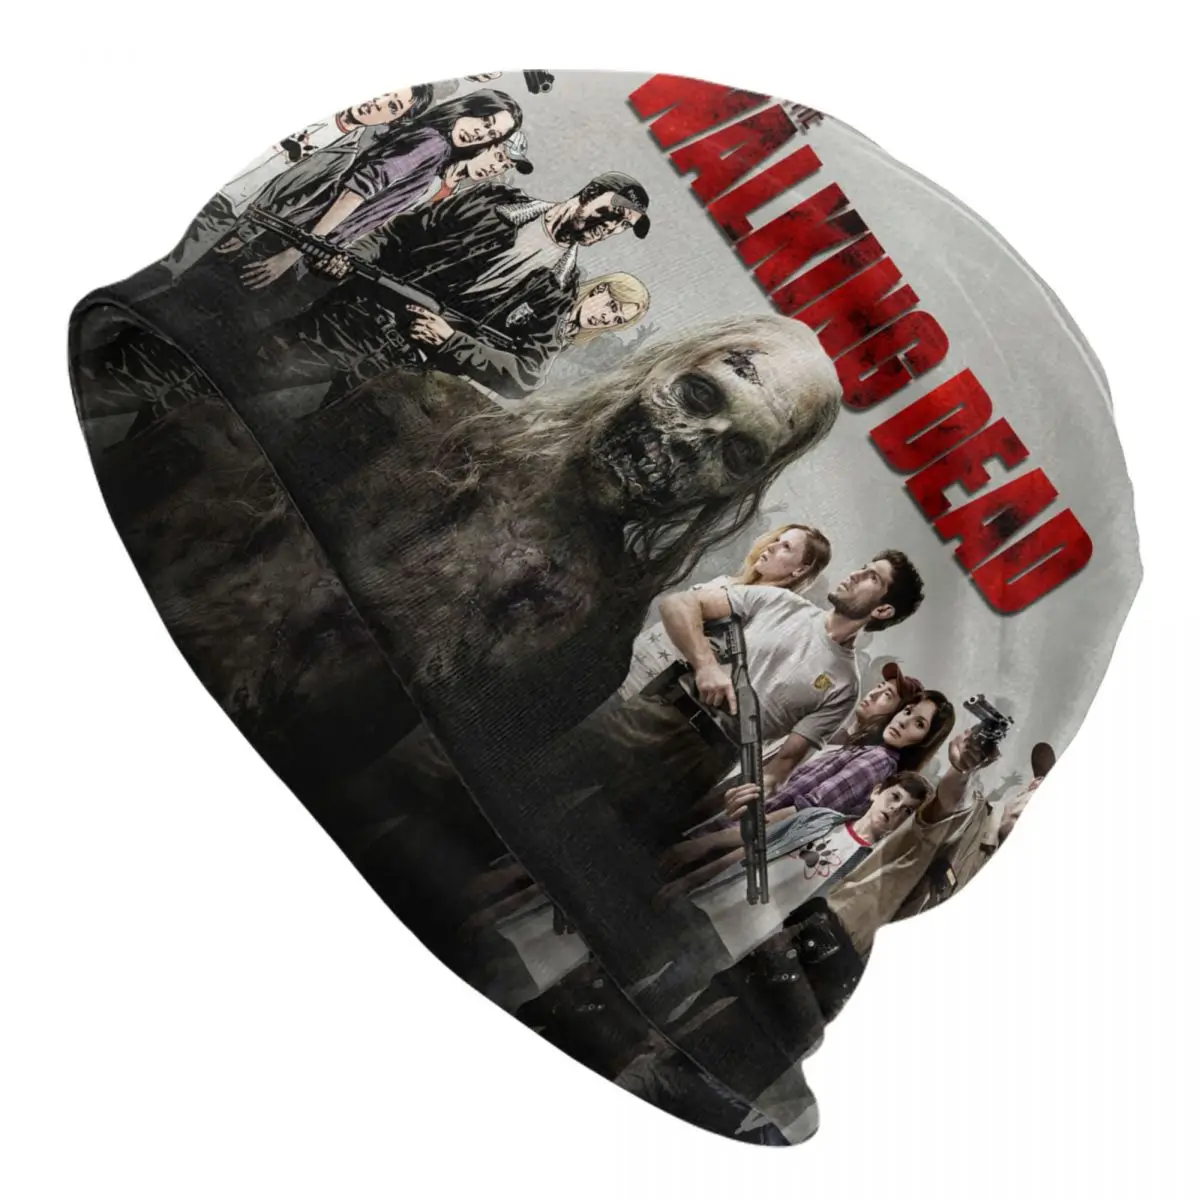 

The Walking Dead Skullies Beanies Caps Men Women Unisex Trend Winter Warm Knitted Hat Adult Horror Zombie TV Show Bonnet Hats